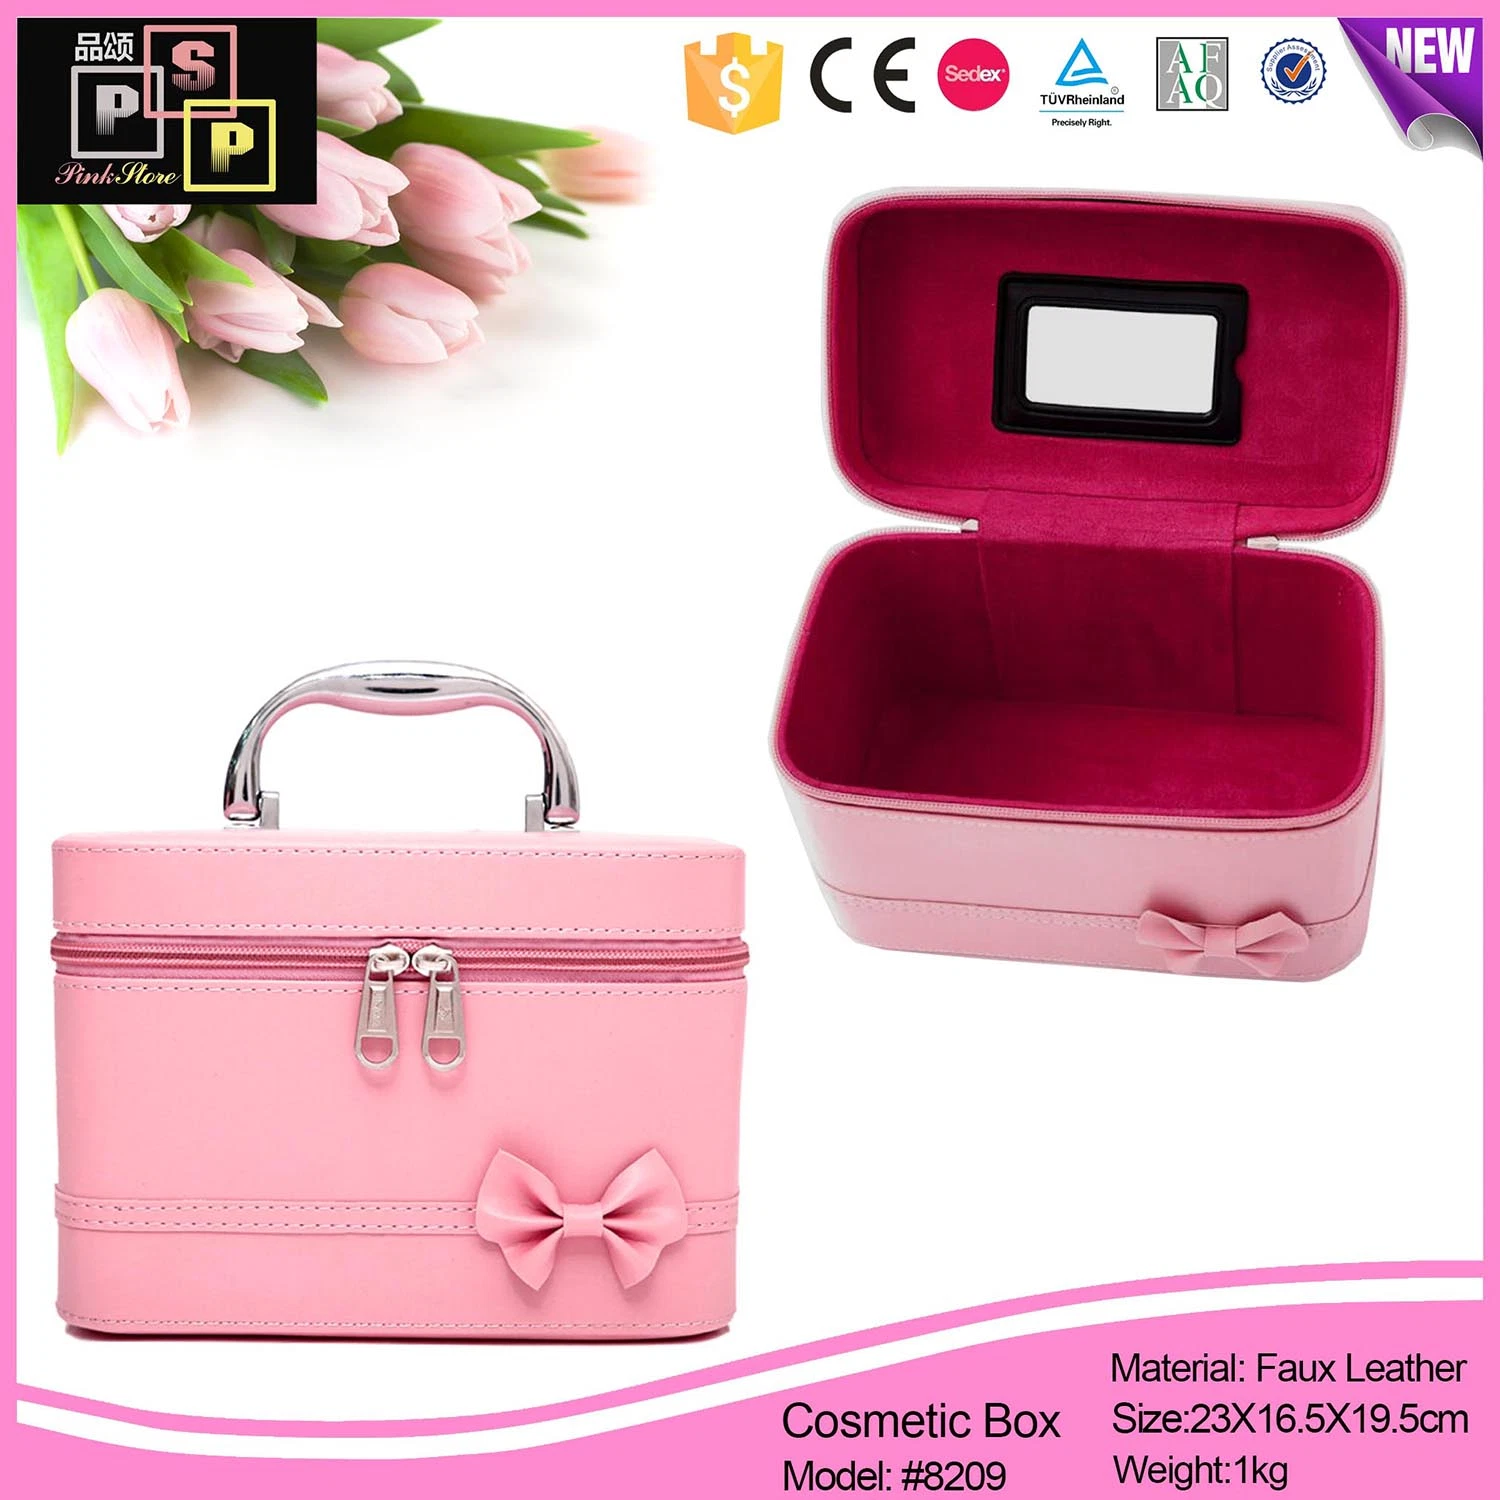 Rose Sacs cosmétiques de luxe cas kit de maquillage de voyage en train de maquillage Case (8209)